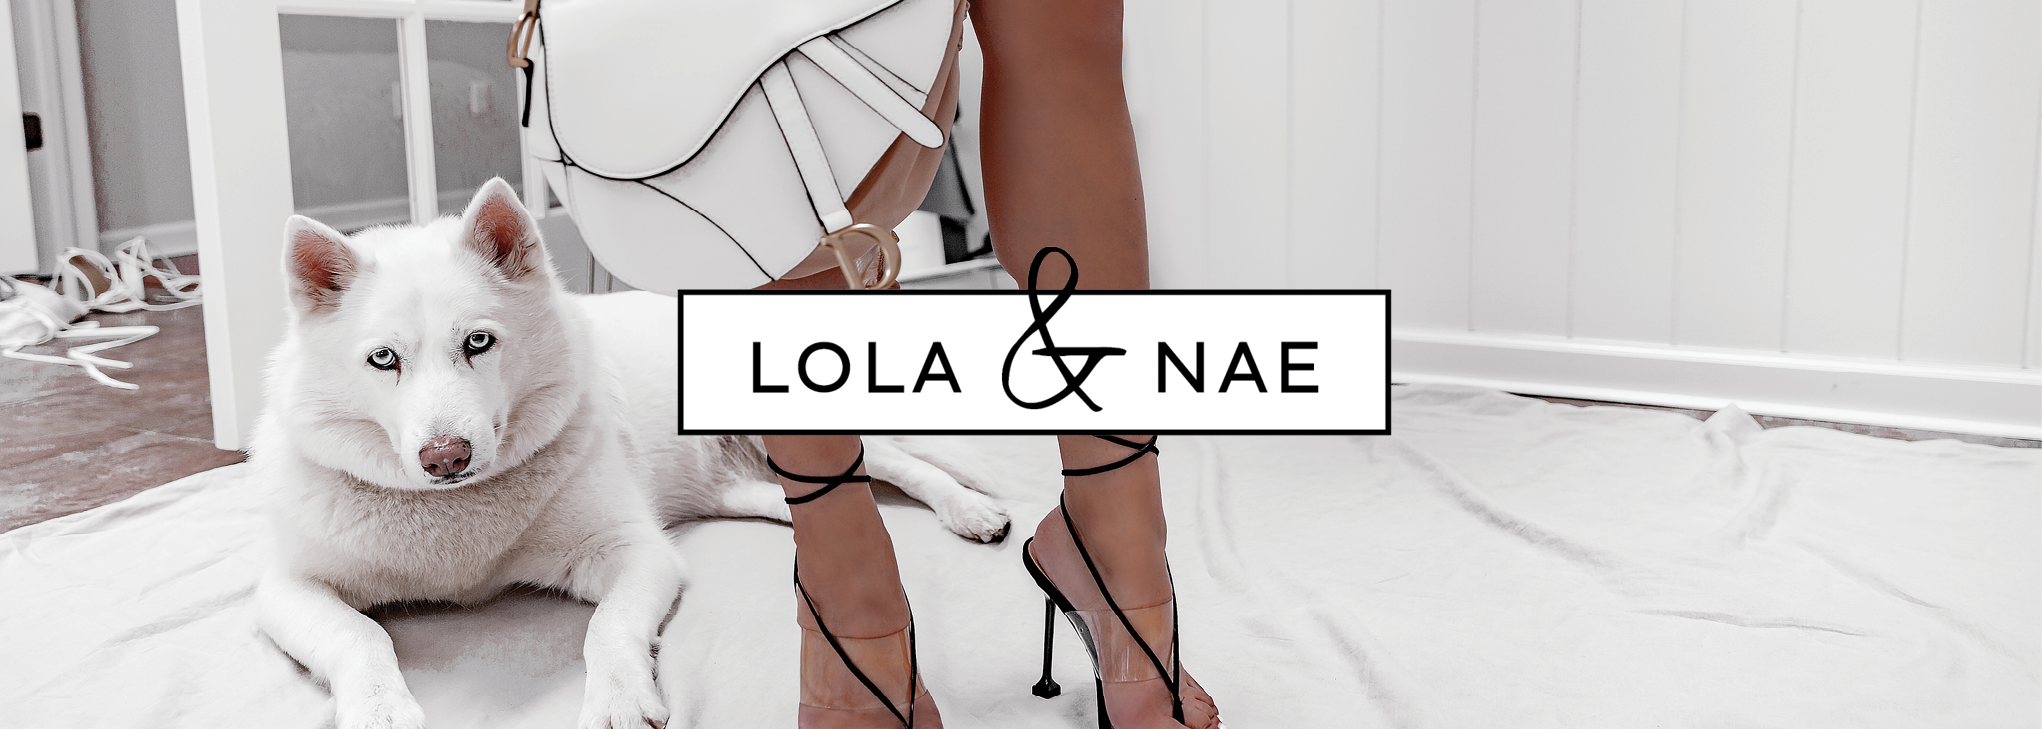 LOLA & NAE - DOES THE PONY-O REALLY WORK?